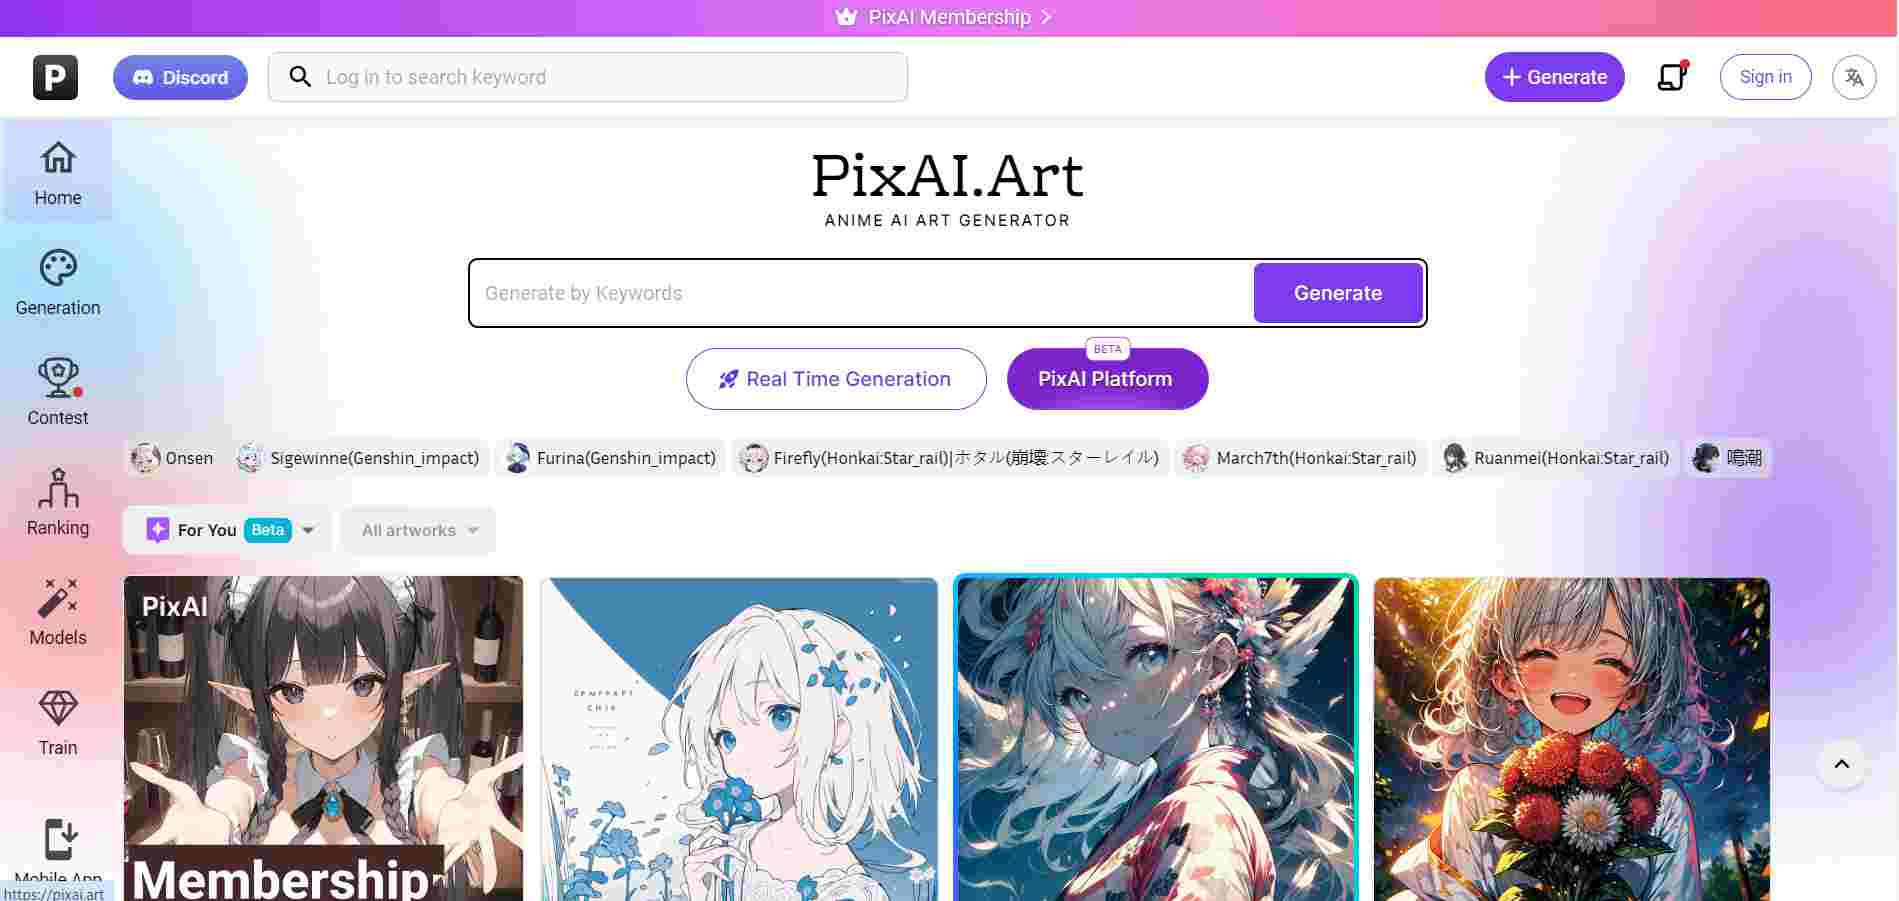  pixai.art-page d'accueil-affichant diverses œuvres d'art d'anime et barre de recherche 